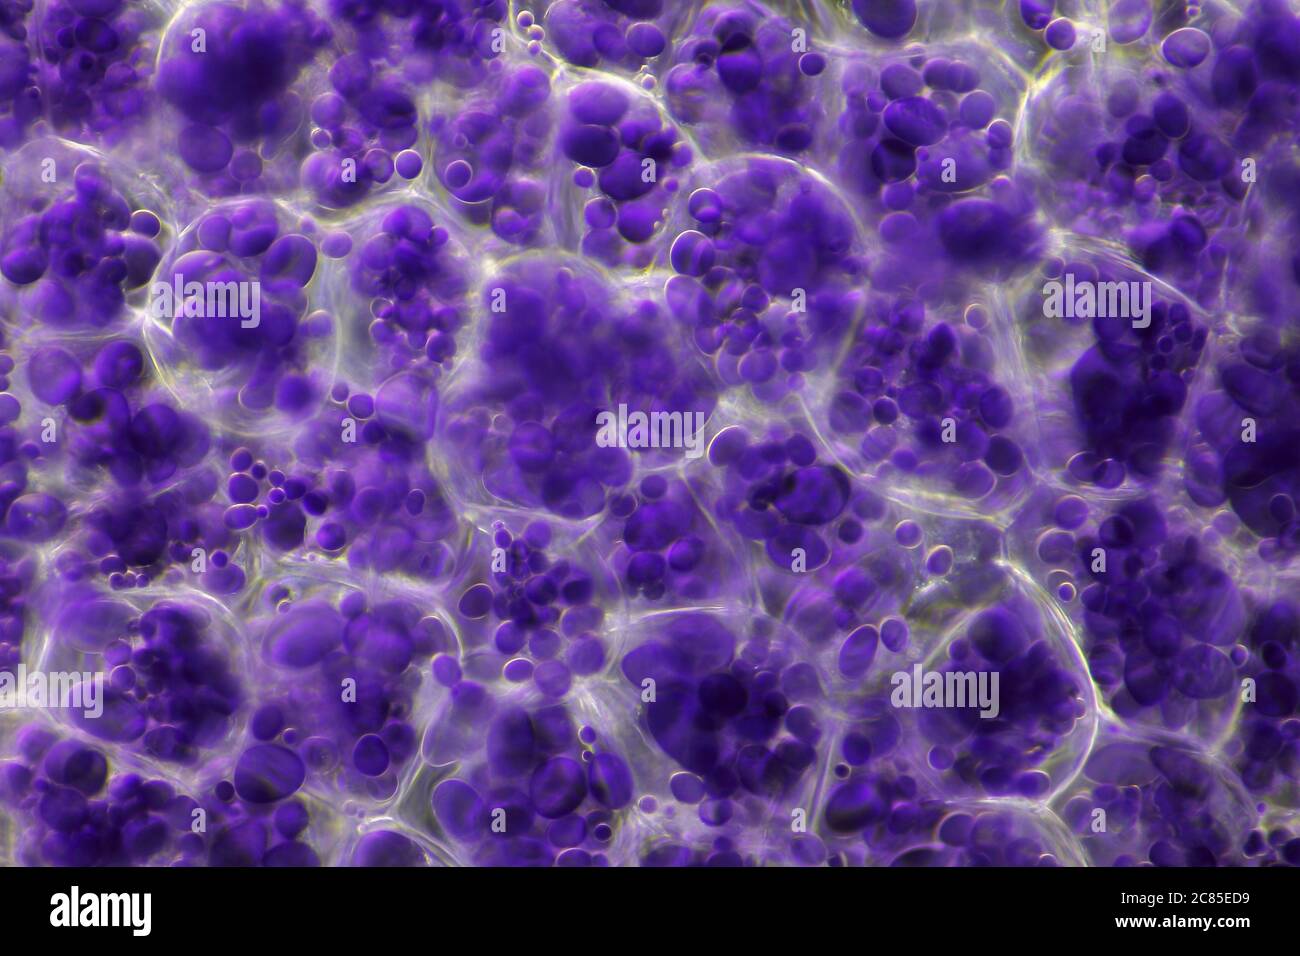 Microscopic view of a potato starch in potato tuber cells. Iodine stain. Darkfield illumination. Stock Photo